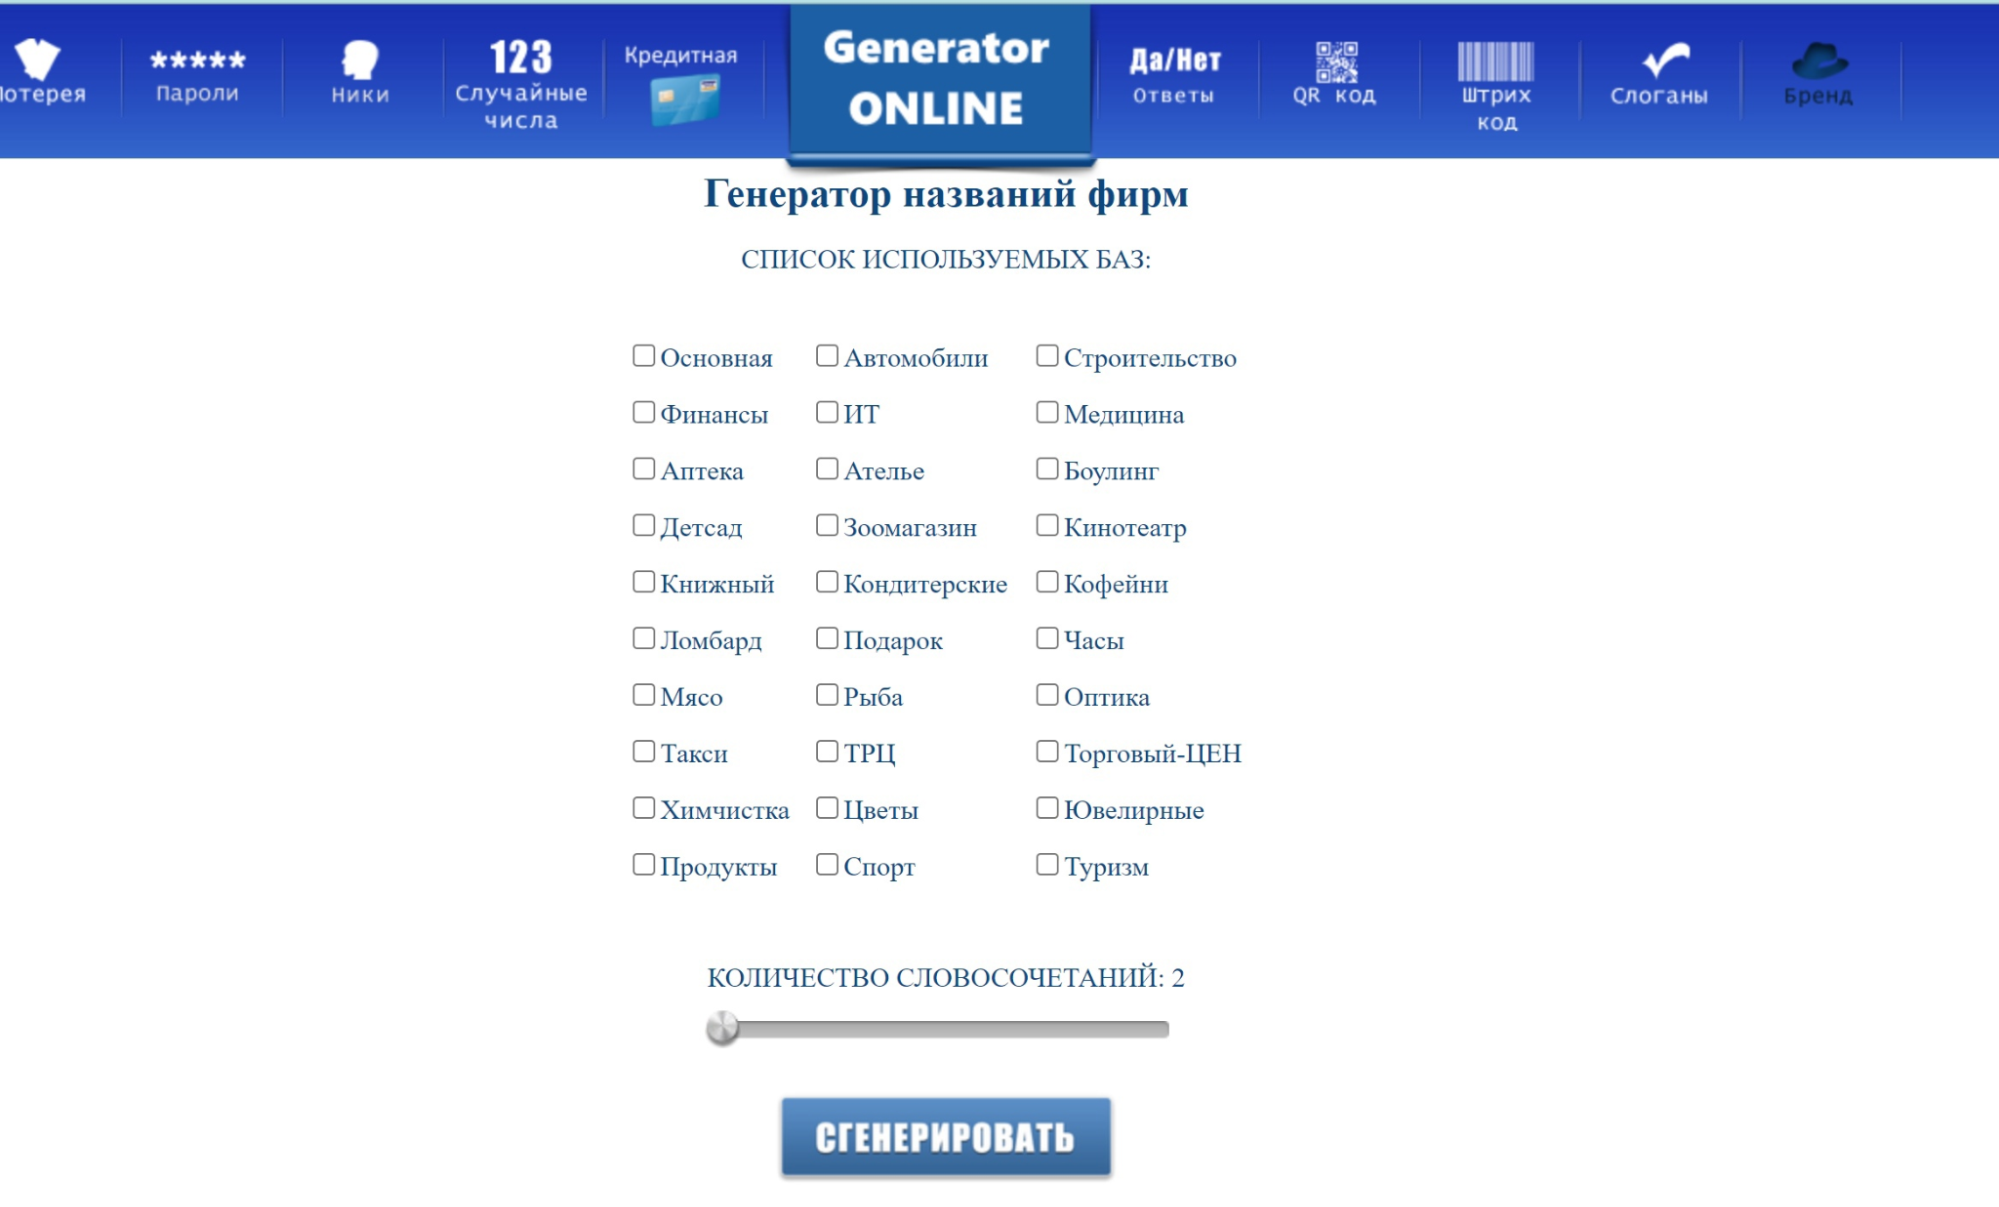 Generator Online